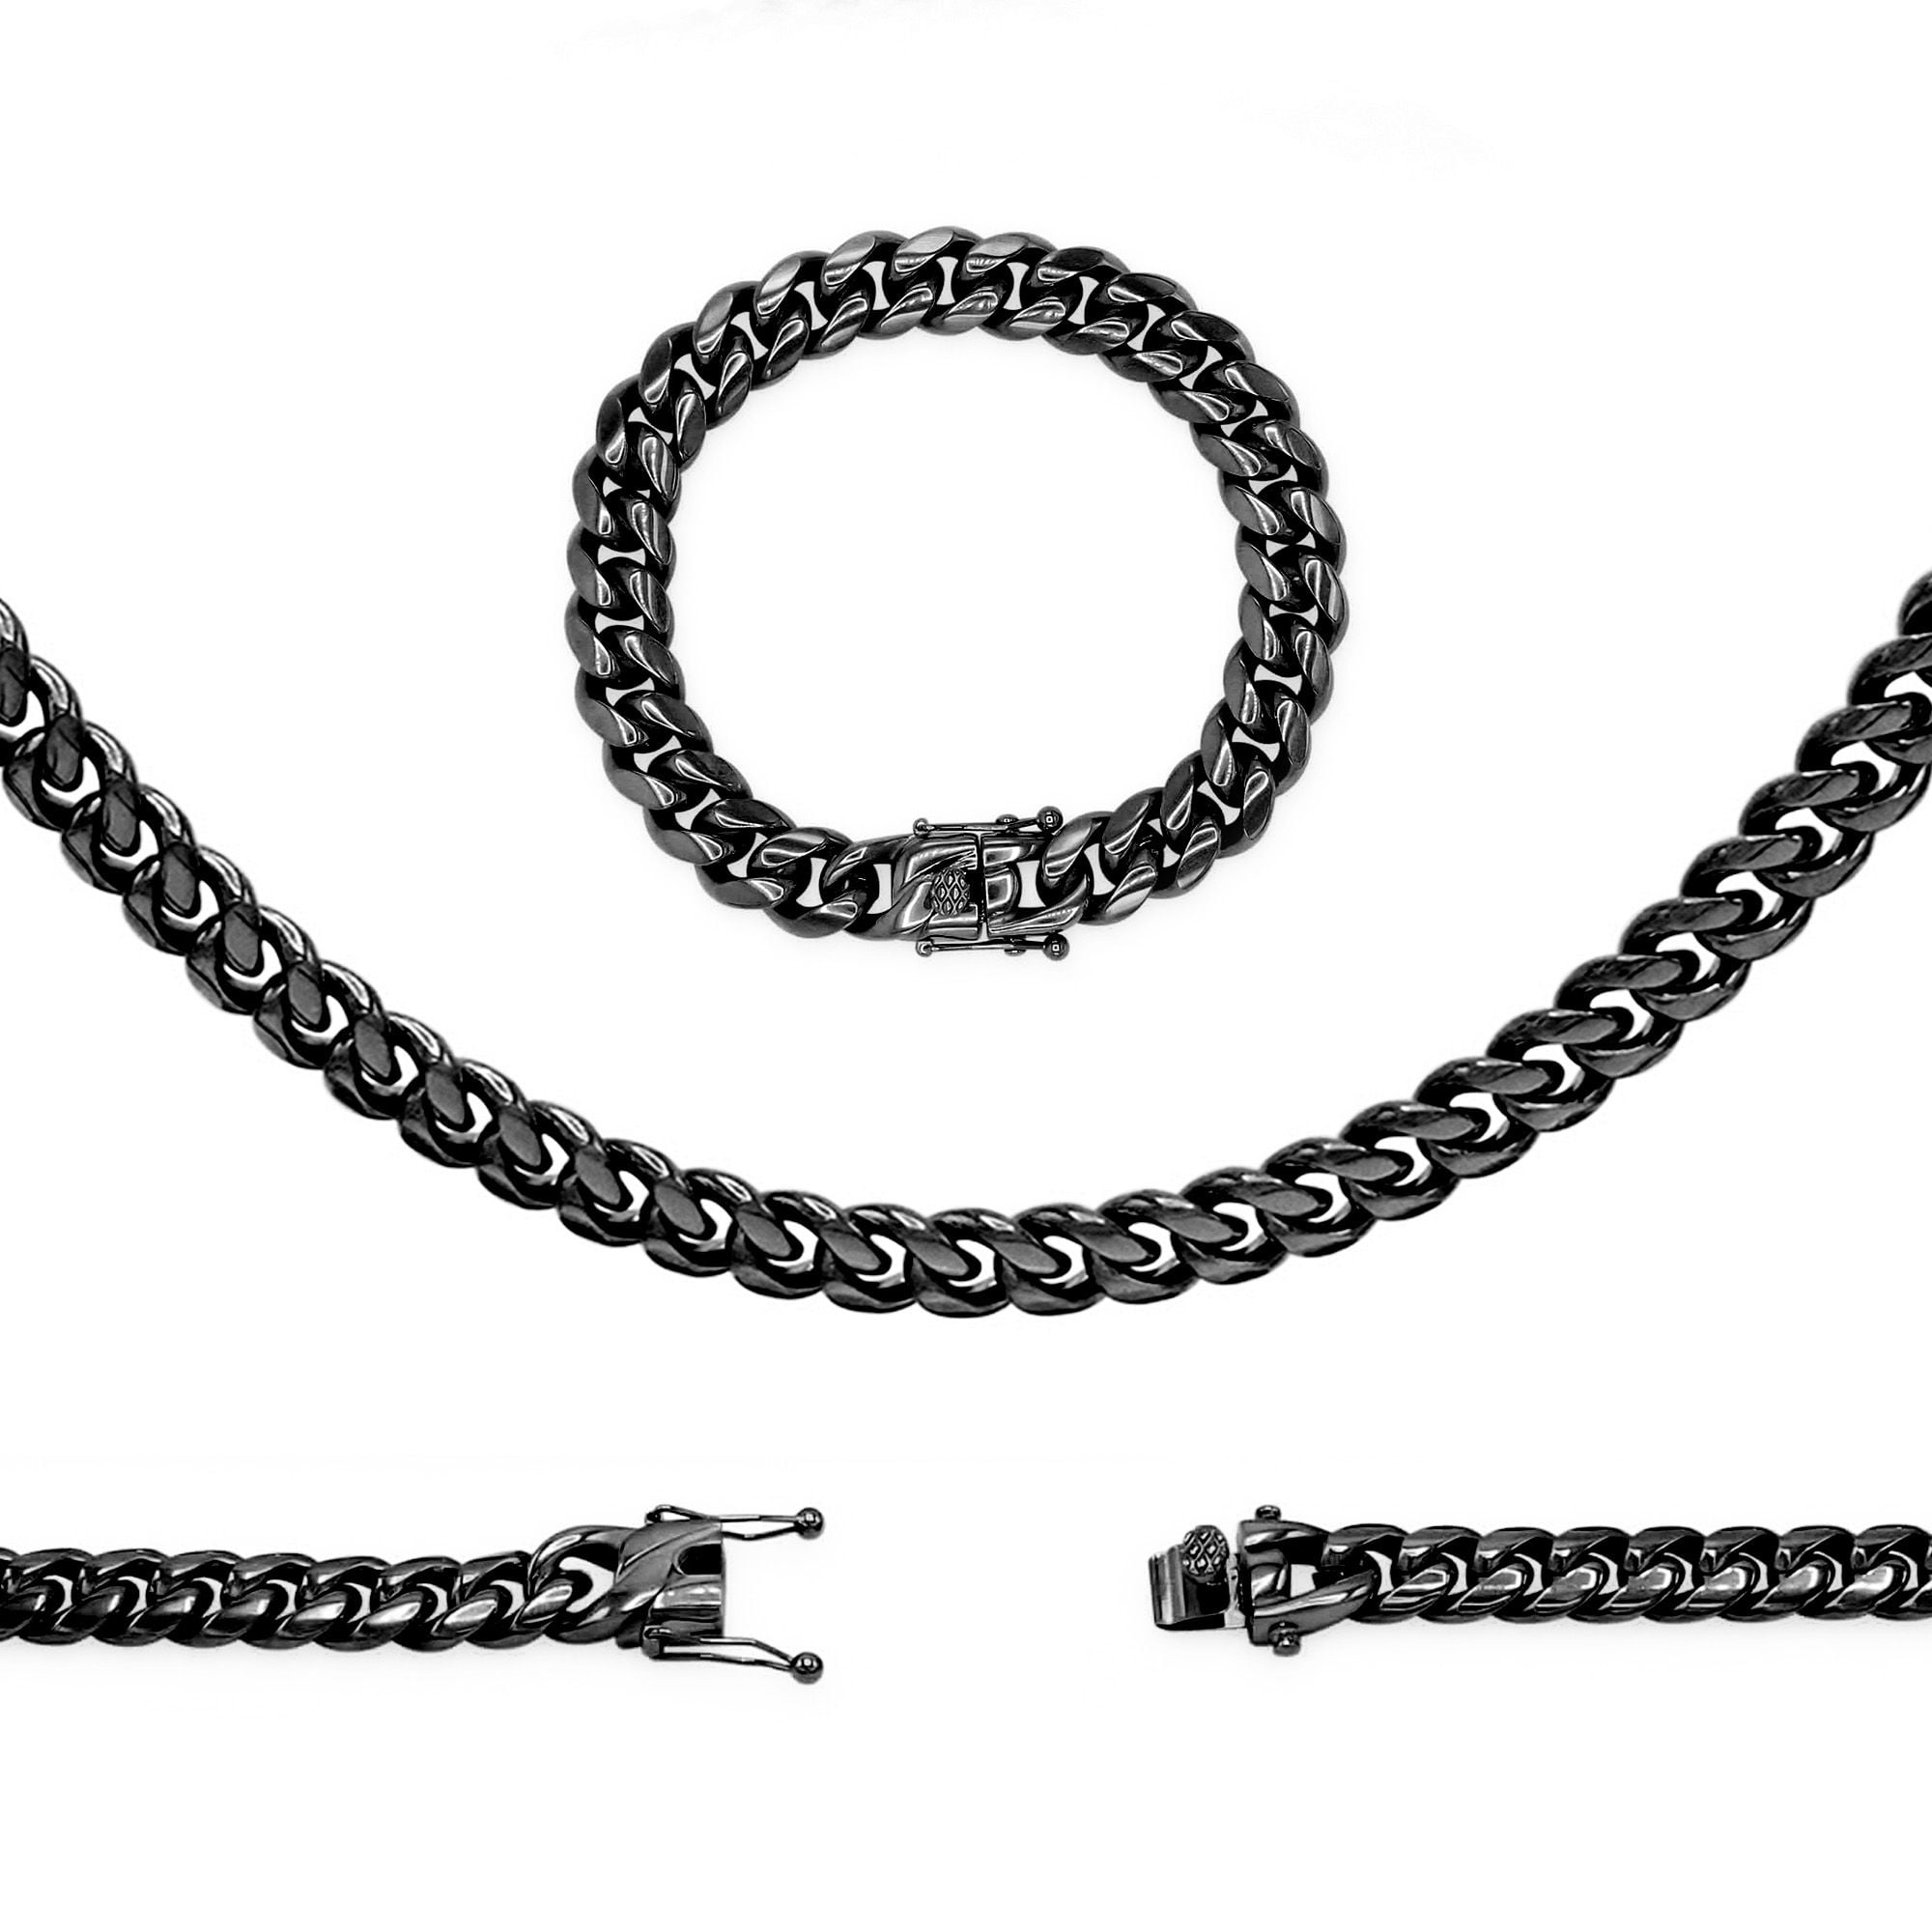 Metro Jewelry Stainless Steel Textured Bracelet Black Ip Plating Lock Extender